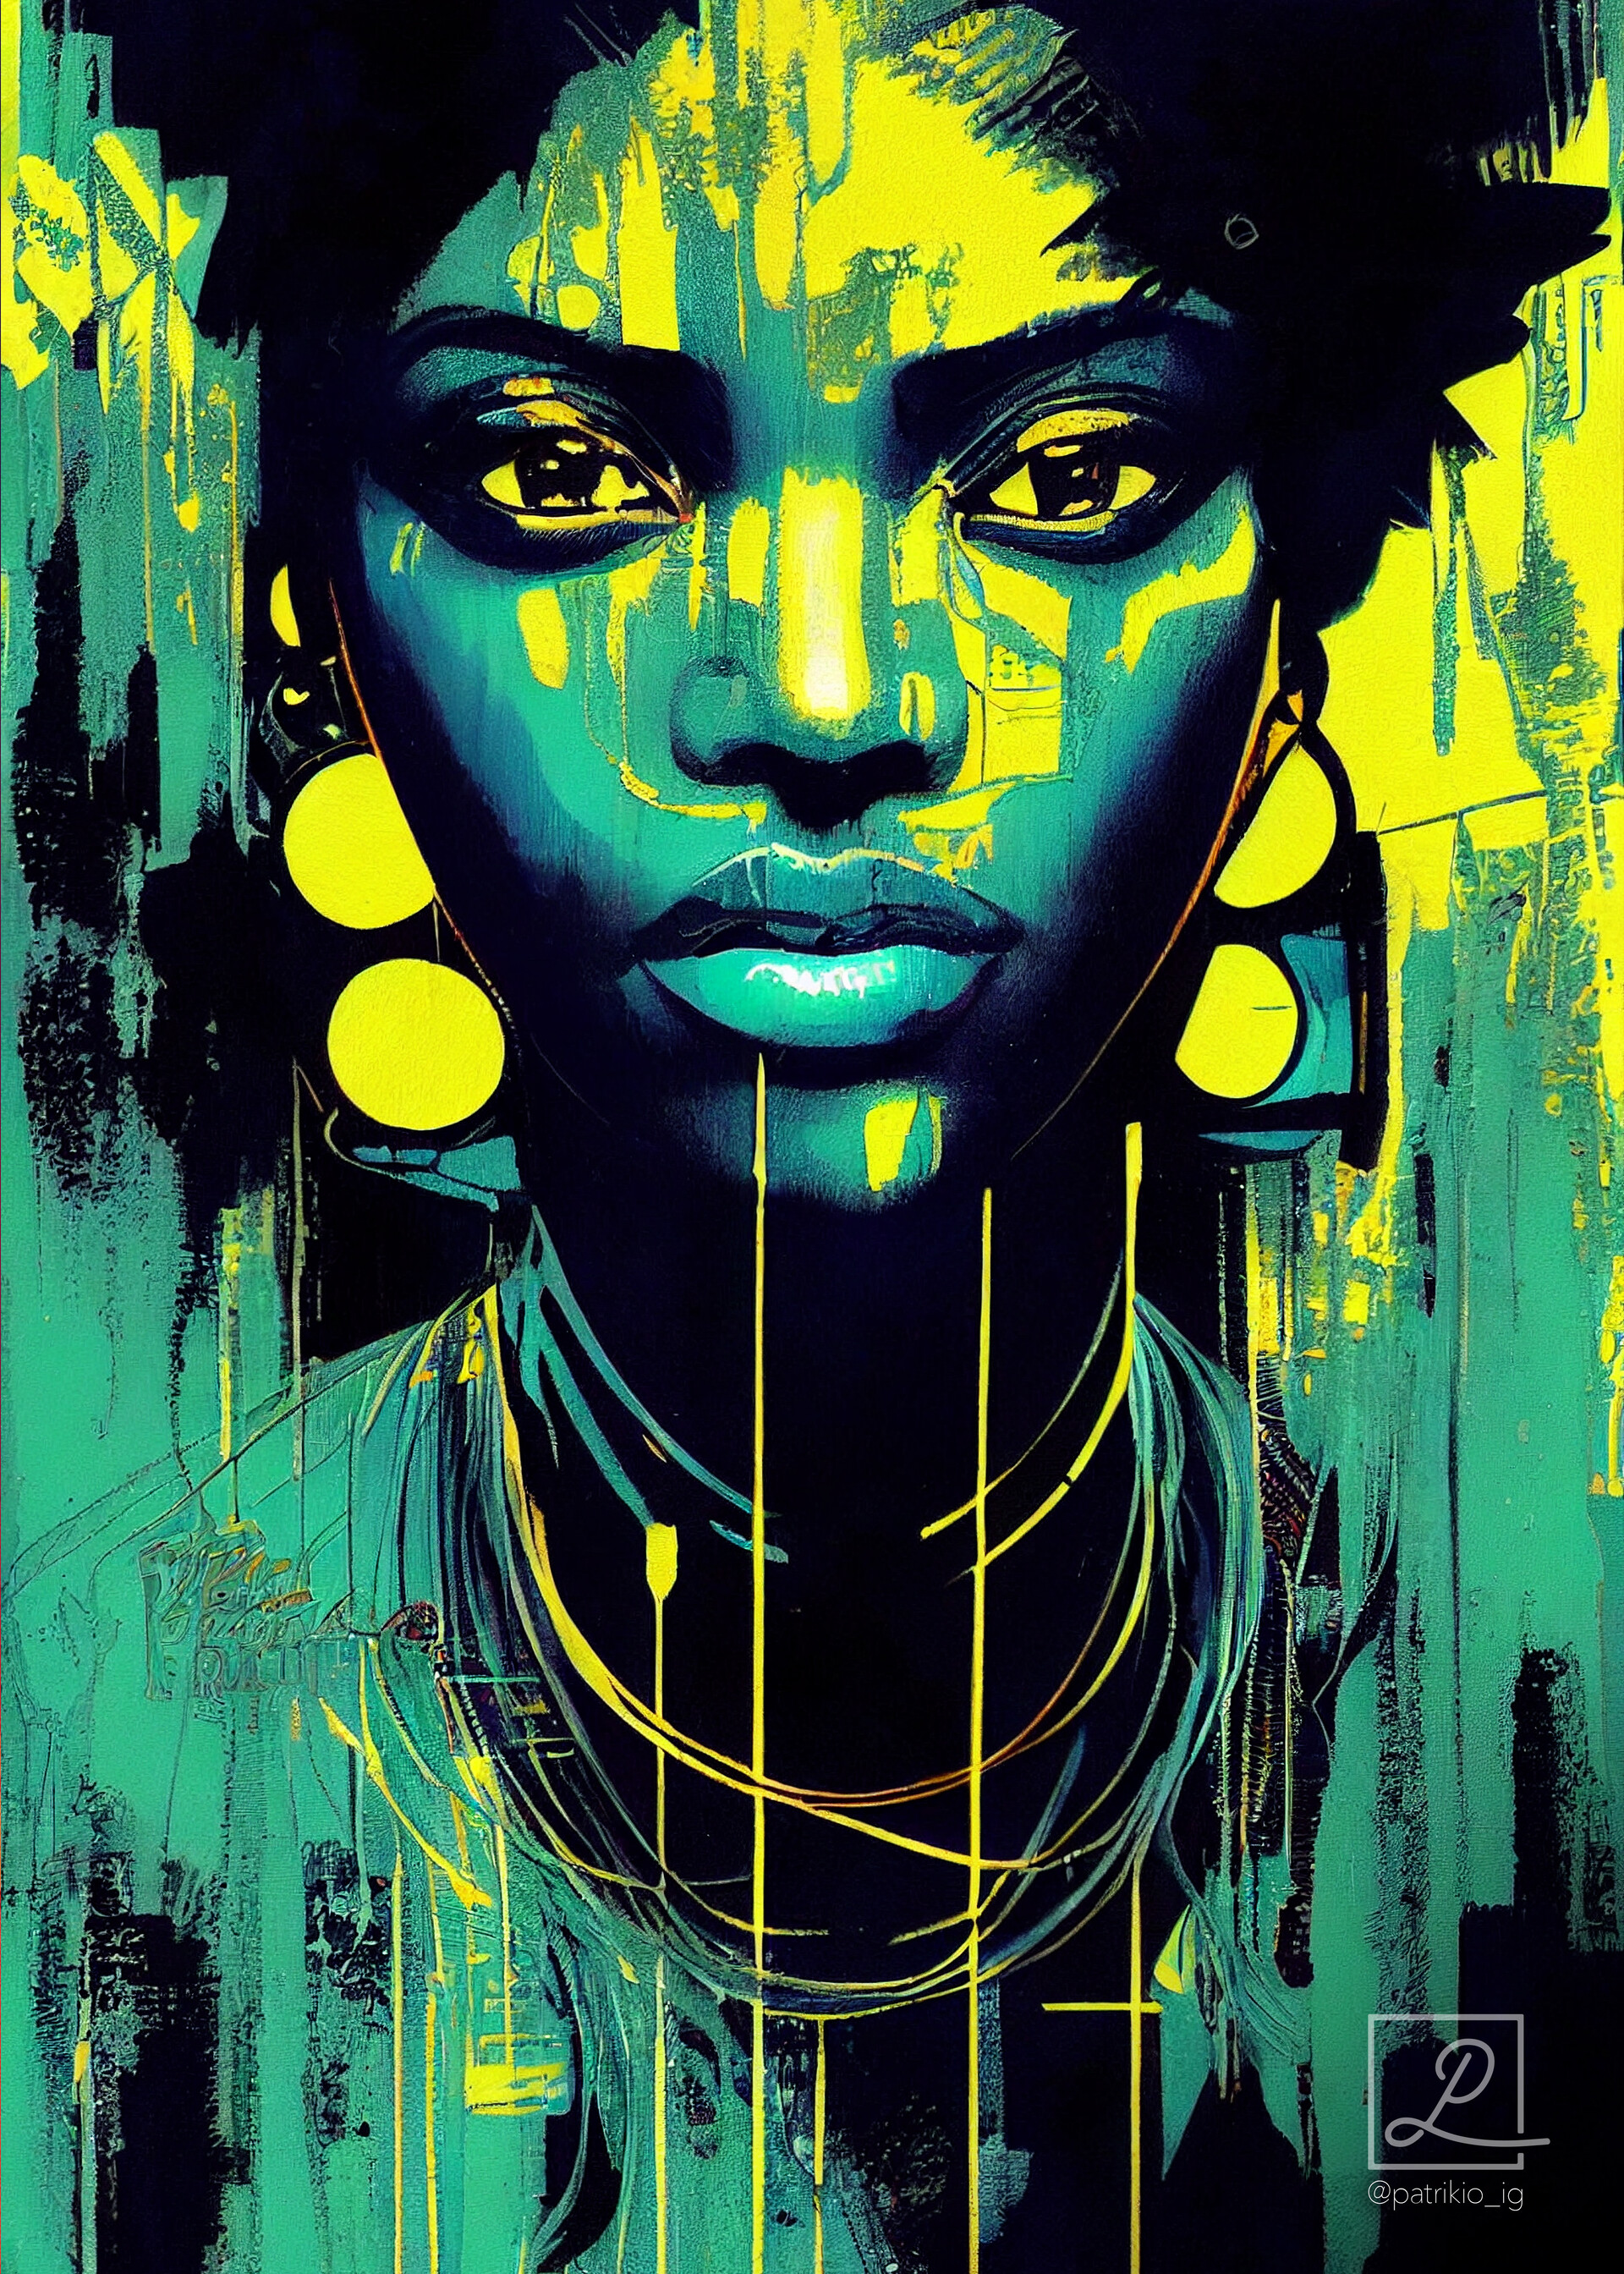 ArtStation - African Cyberpunk Citizen